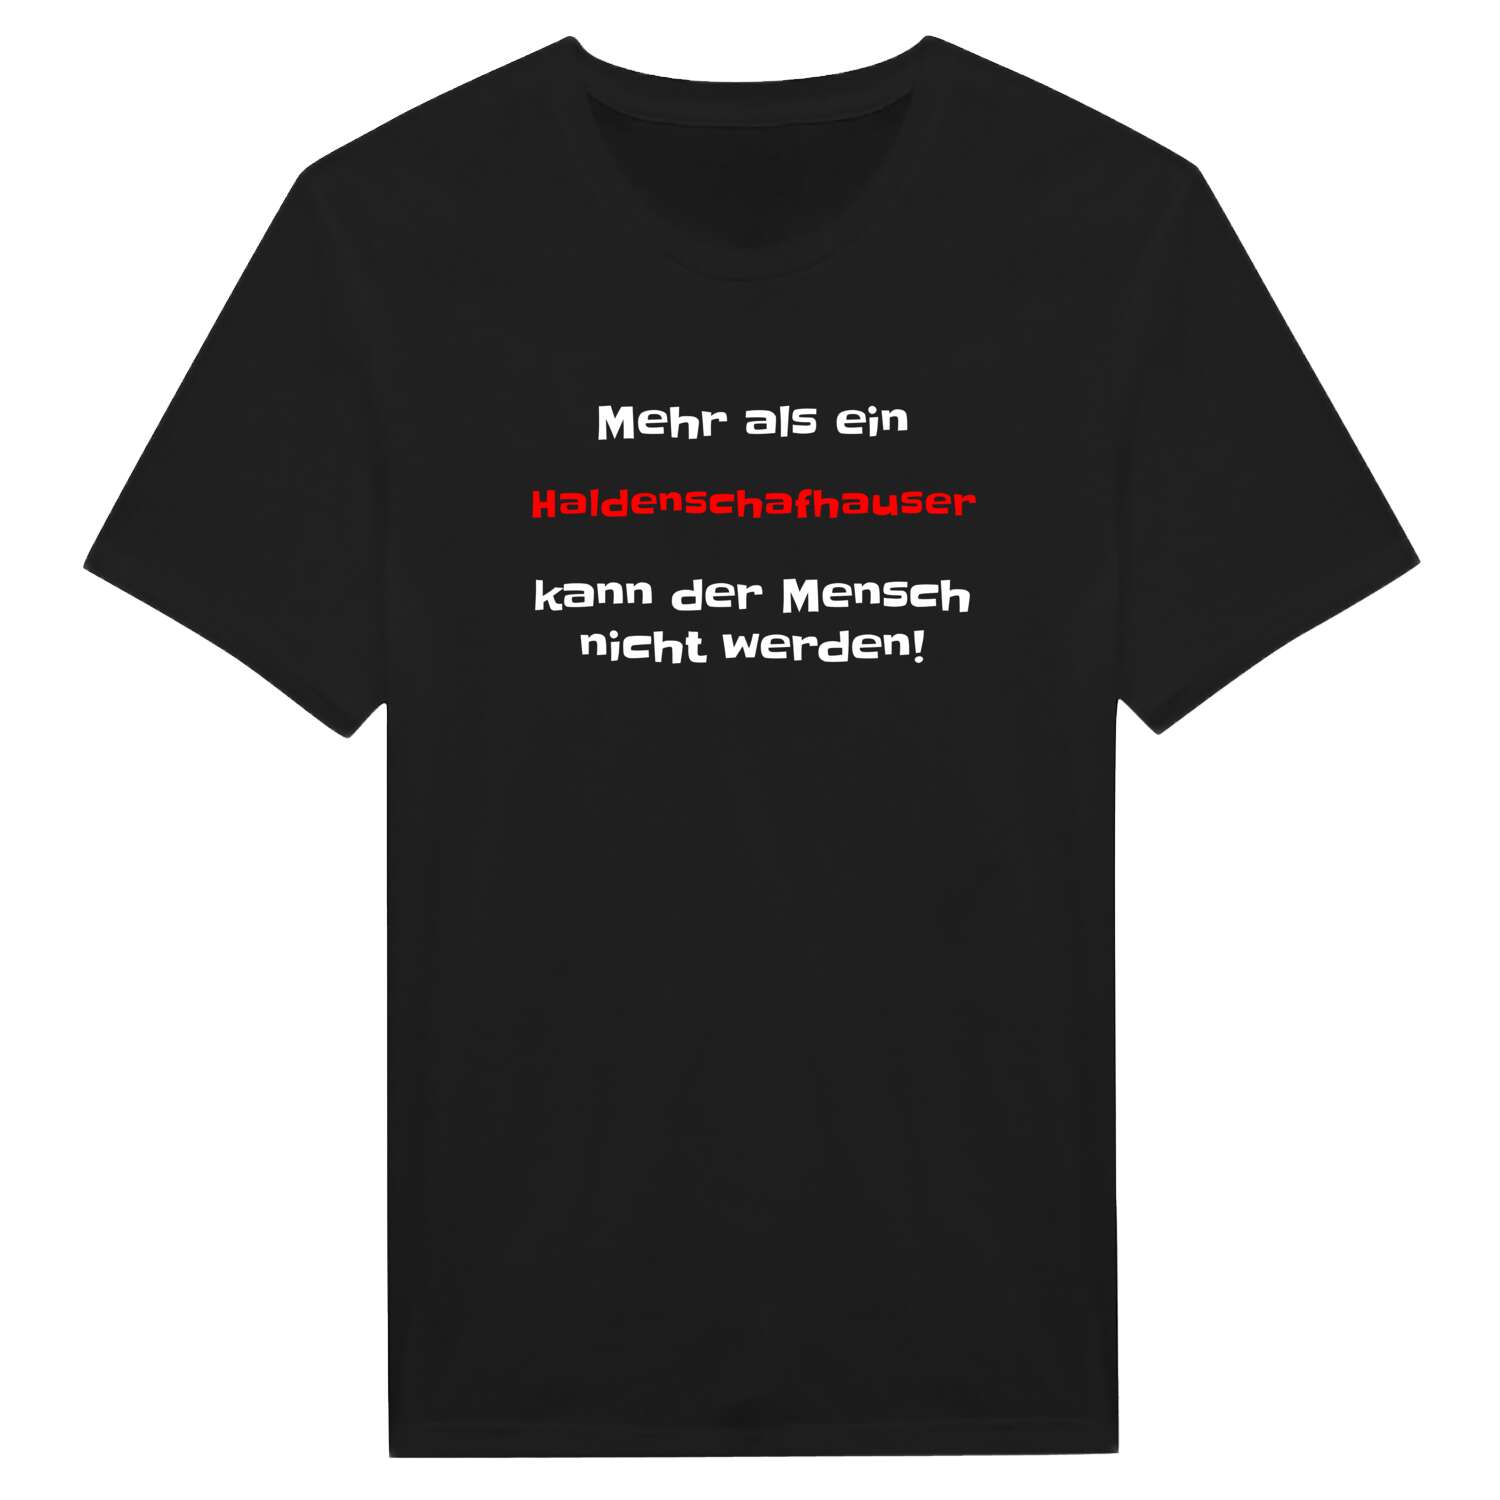 Haldenschafhaus T-Shirt »Mehr als ein«